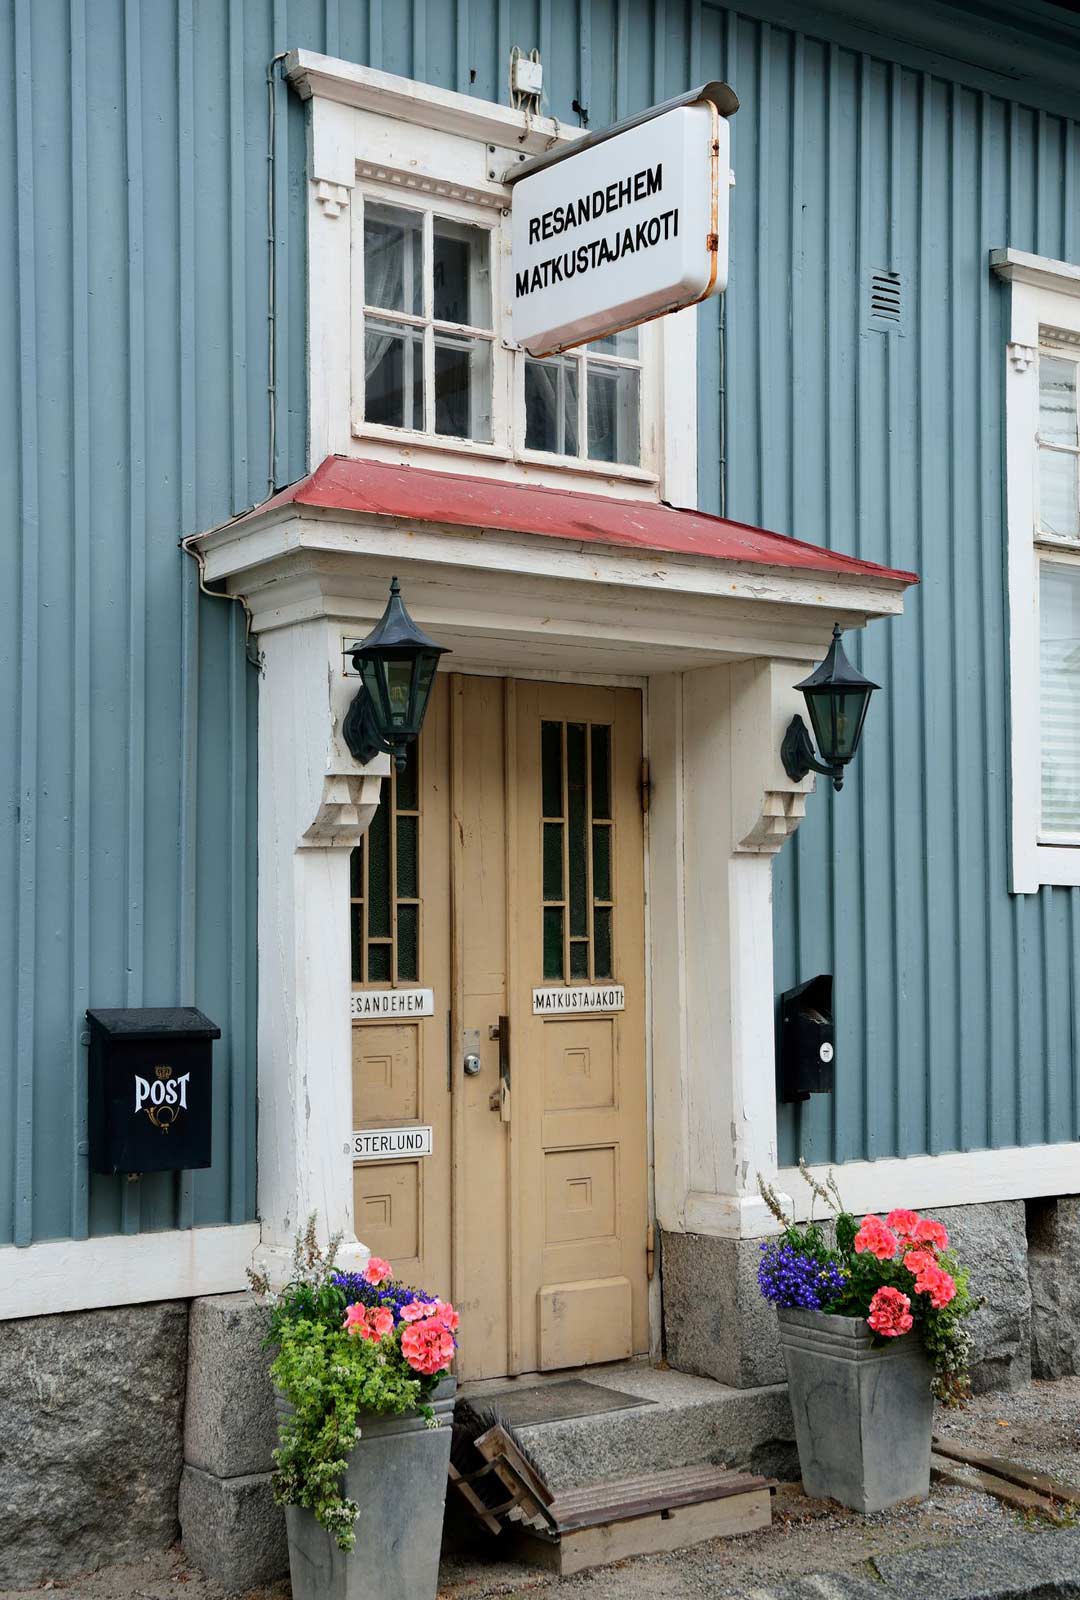 PIetarsaari: Pietarsaaren idyllisessä vanhassa kaupungissa voi majoittua perinteisessä matkustajakodissa.